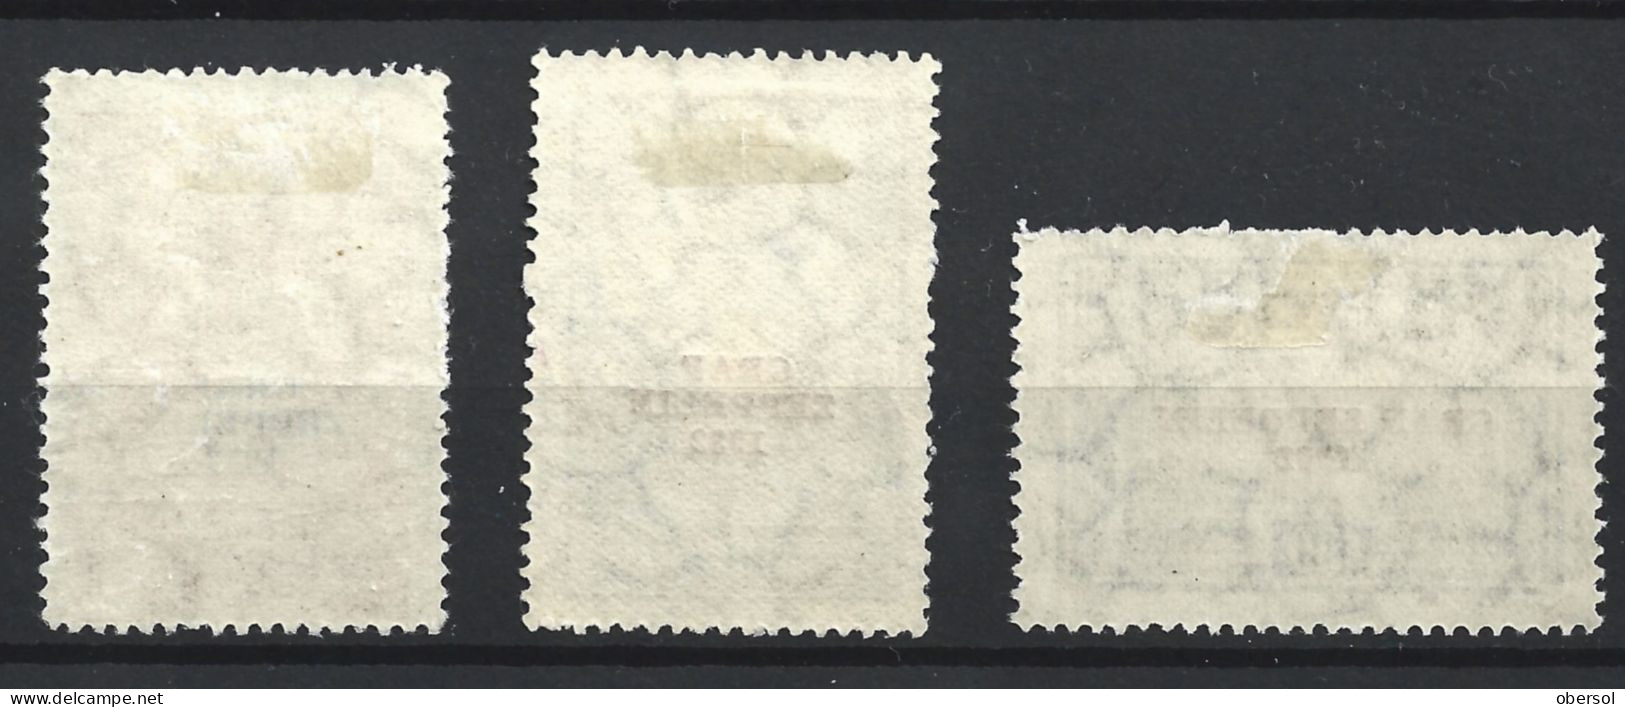 Argentina 1932 Graf Zeppelin Overprint Complete Set MH Stamps ** HCV ** - Unused Stamps